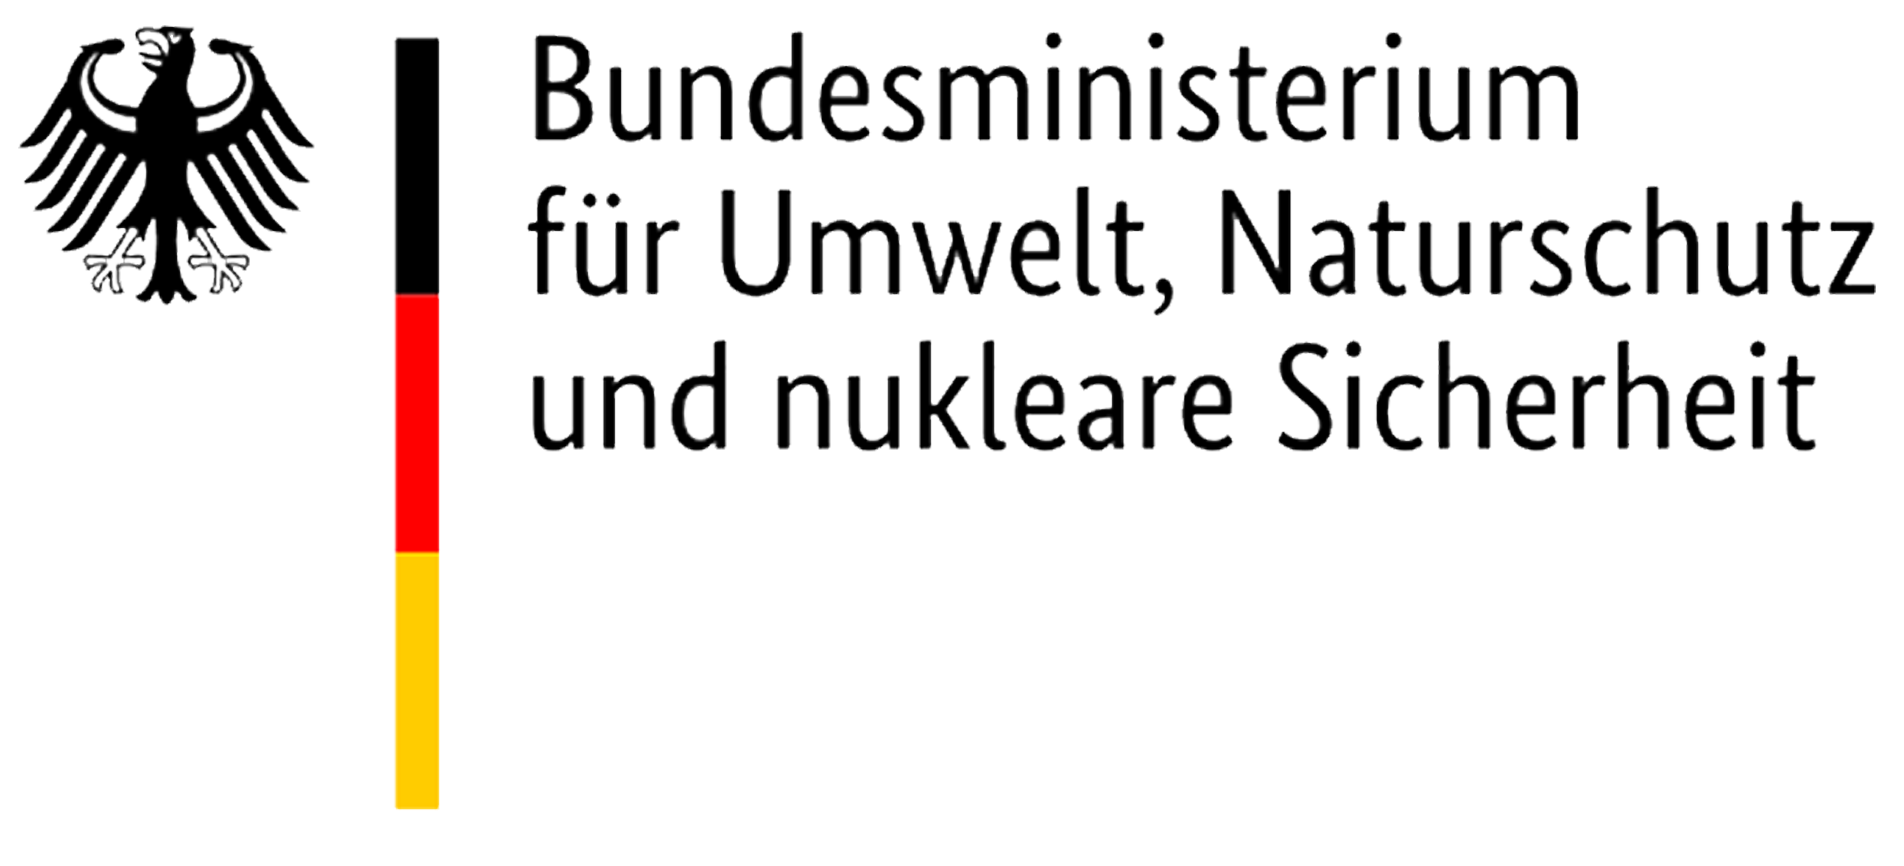 Bundesministerium für Umwelt, Naturschutz und nukleare Sicherheit (BMU)